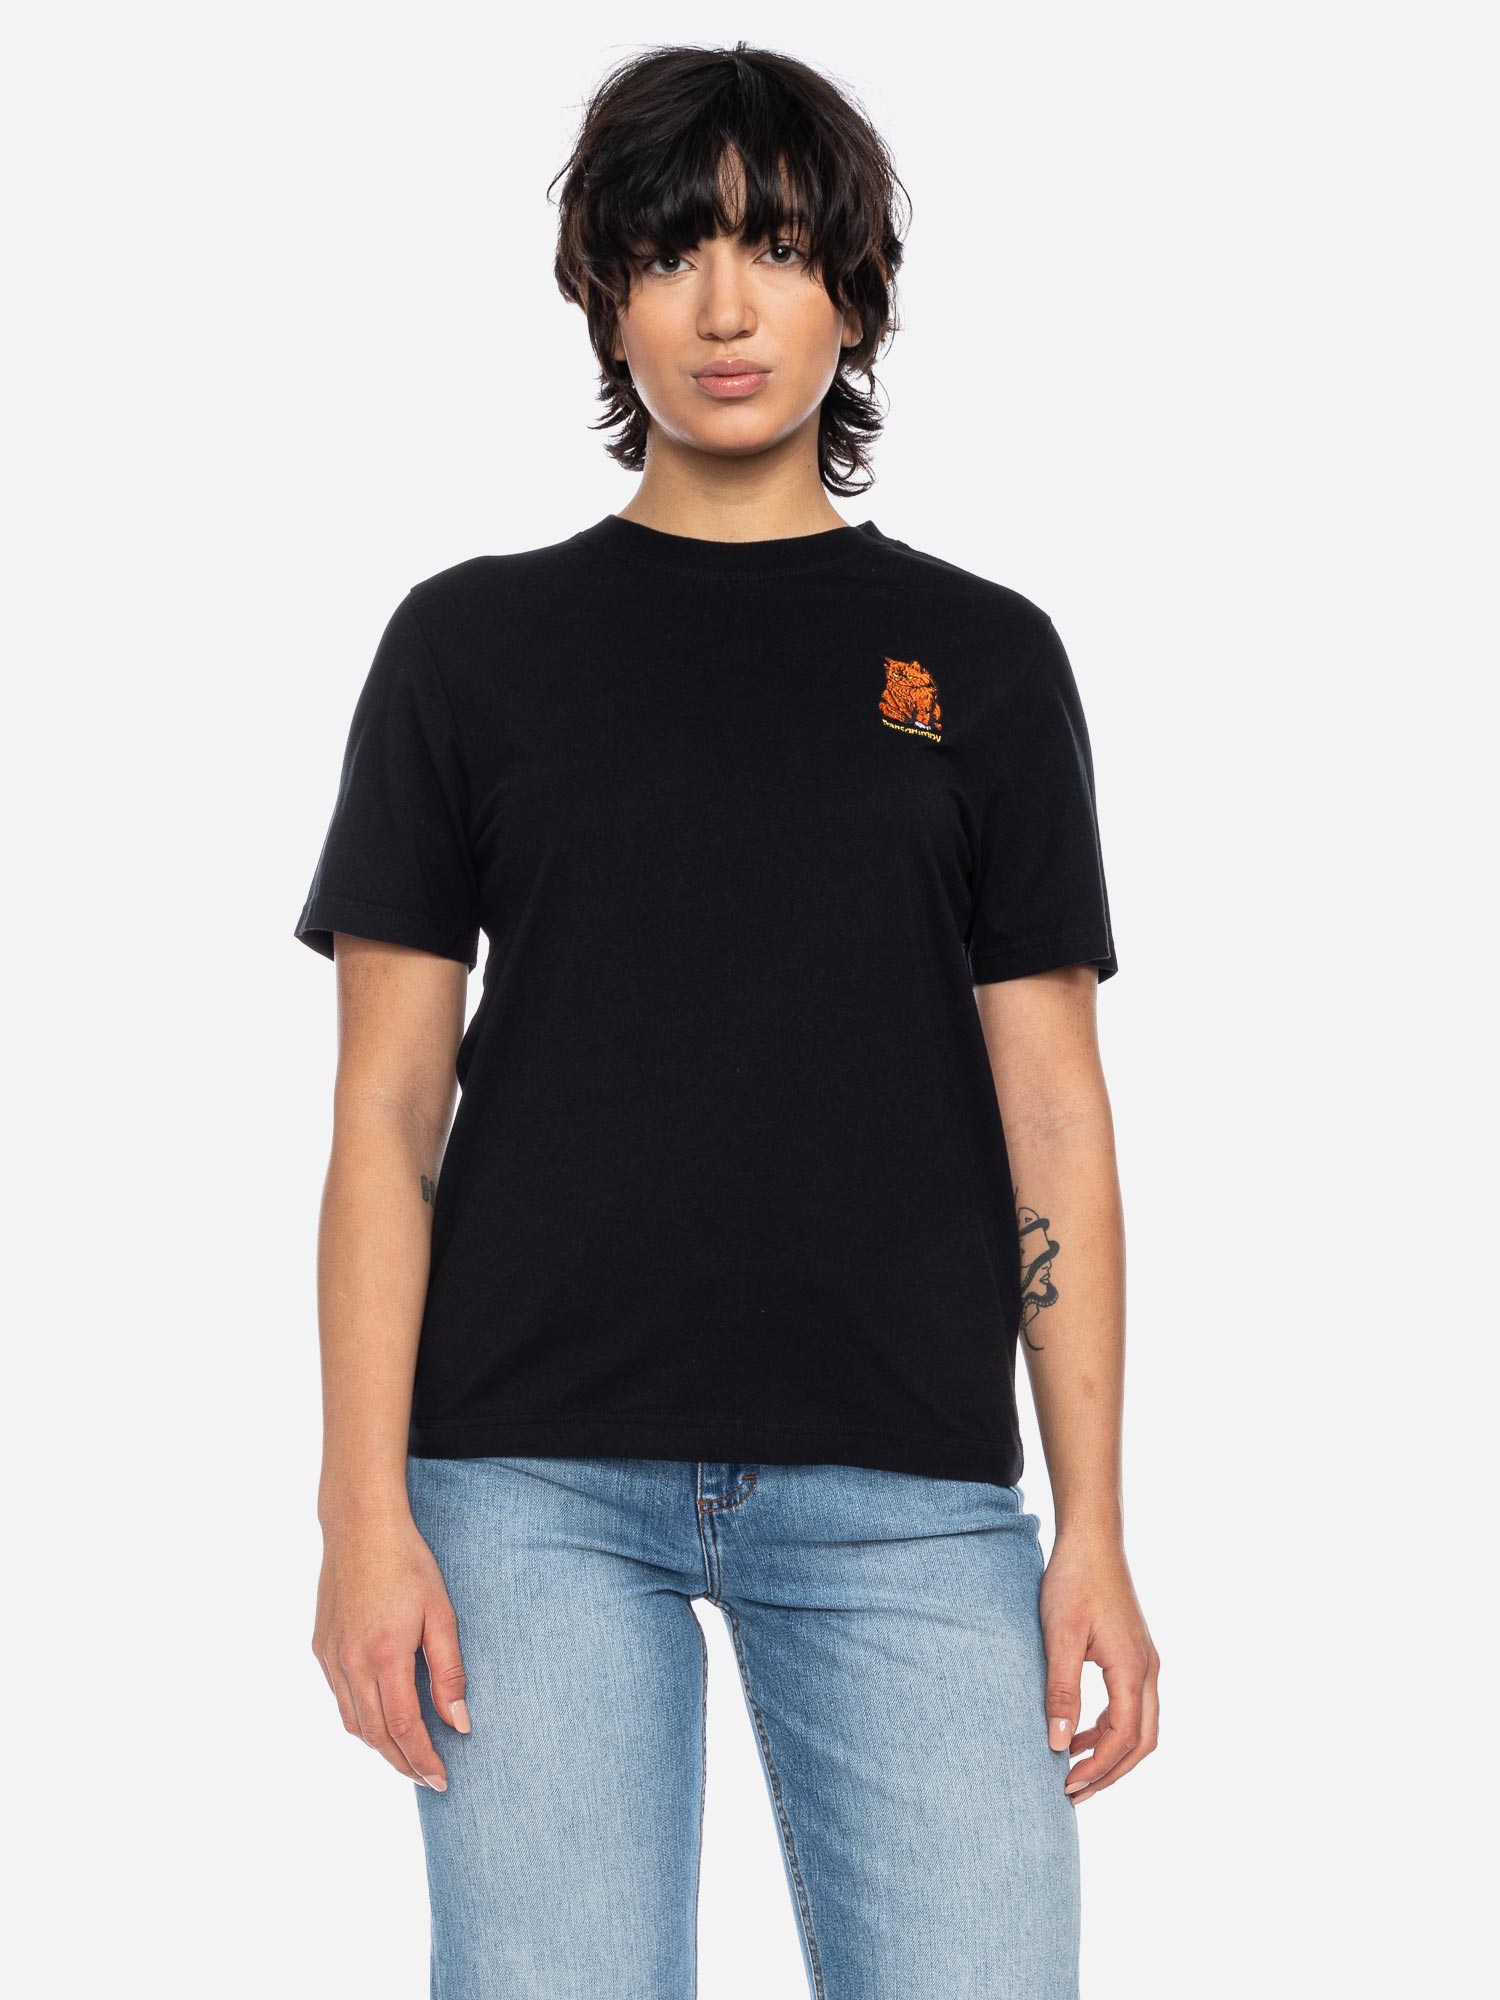 T-Shirt Maja Transgrumpy GOTS OC BLK Größe: XS Farbe: BLK